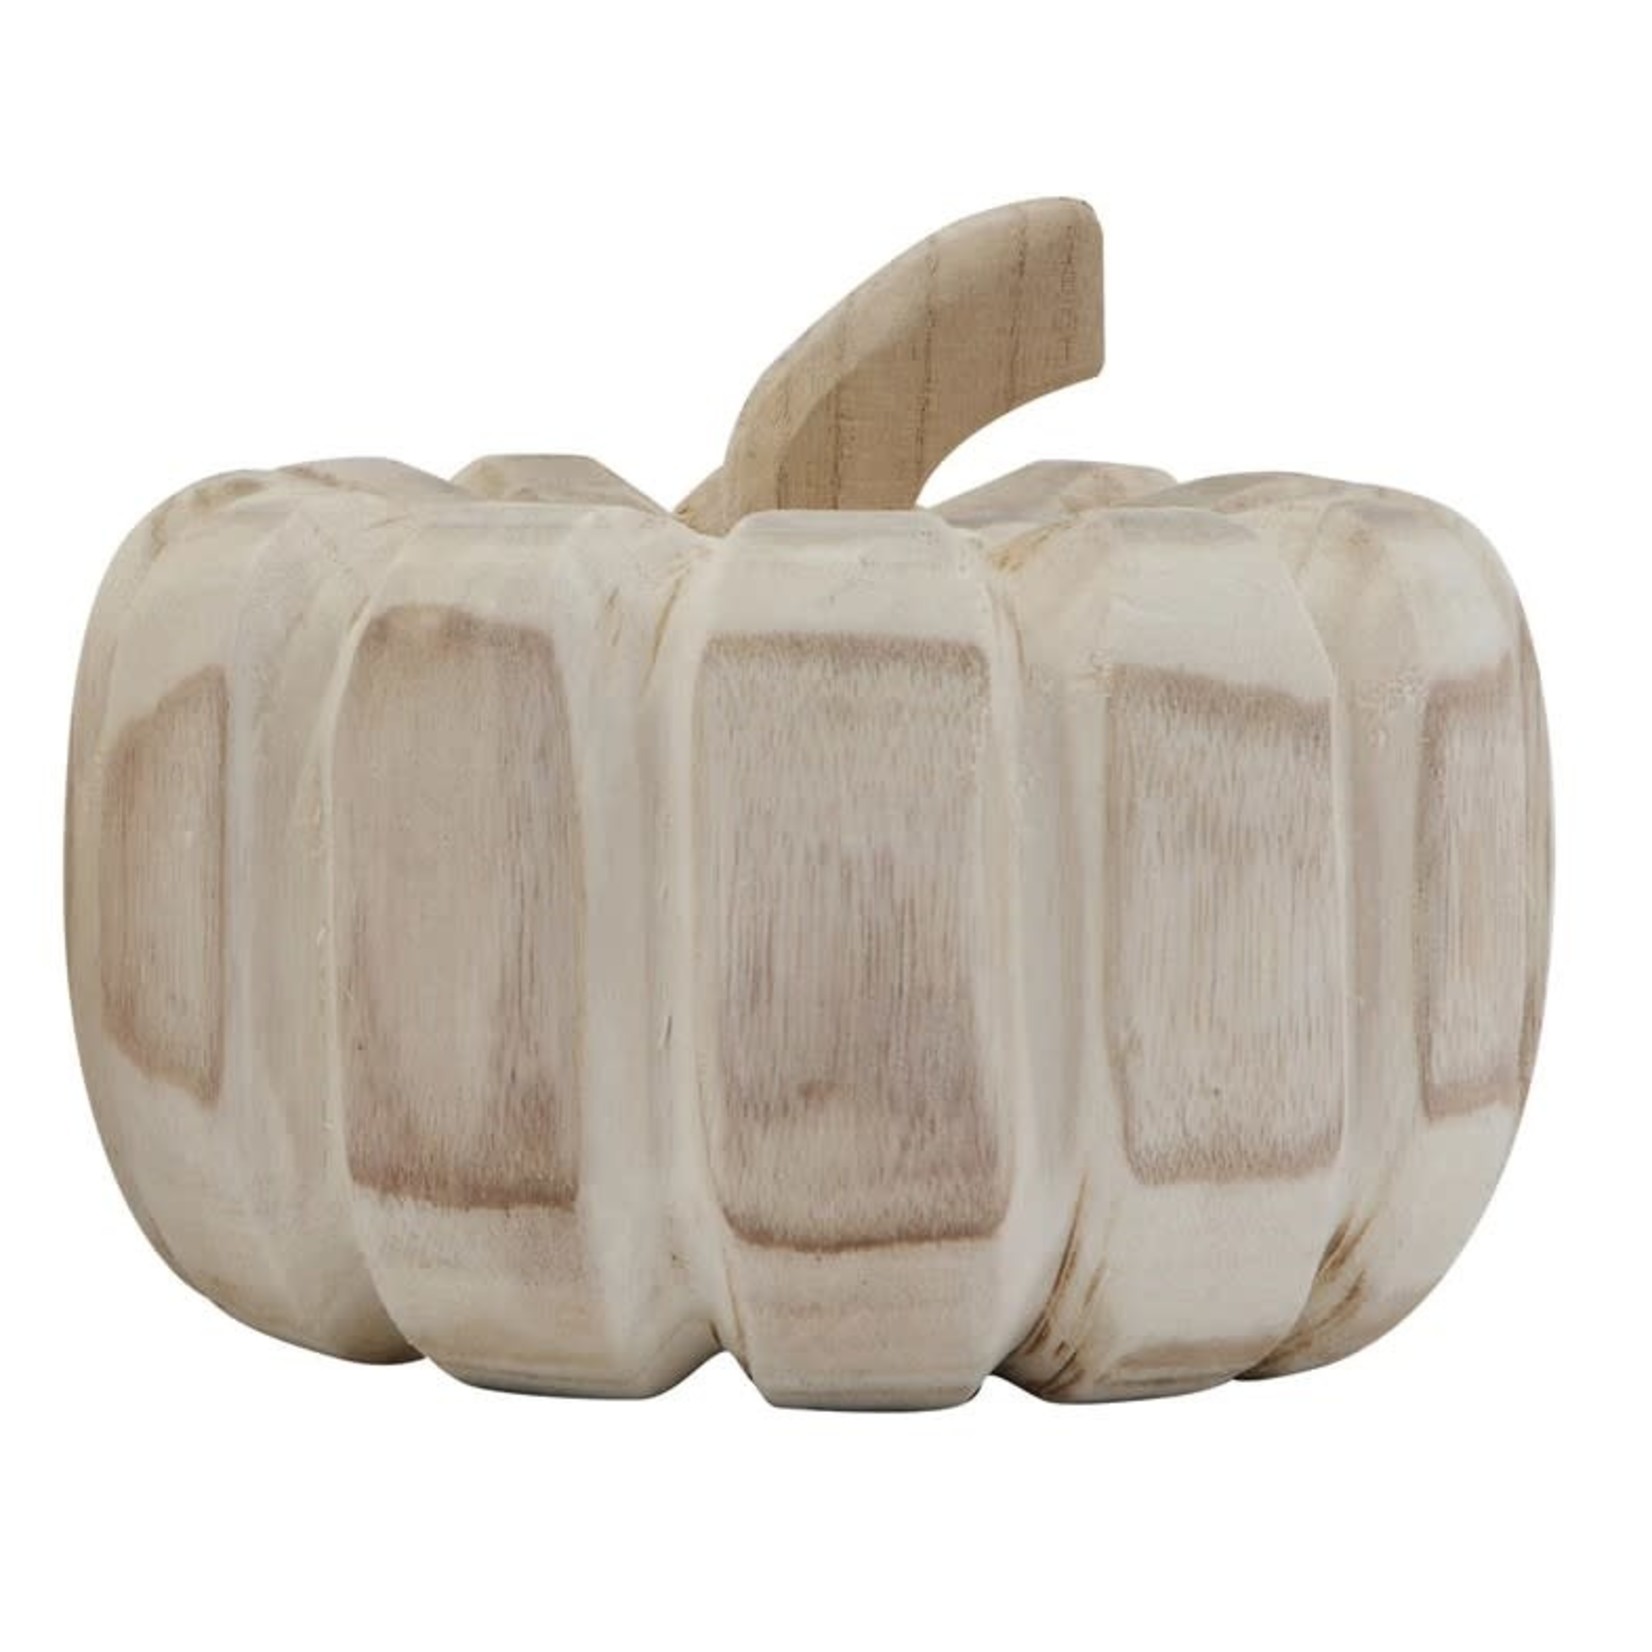 Mickler & Co. Hand-Carved Wood Pumpkin